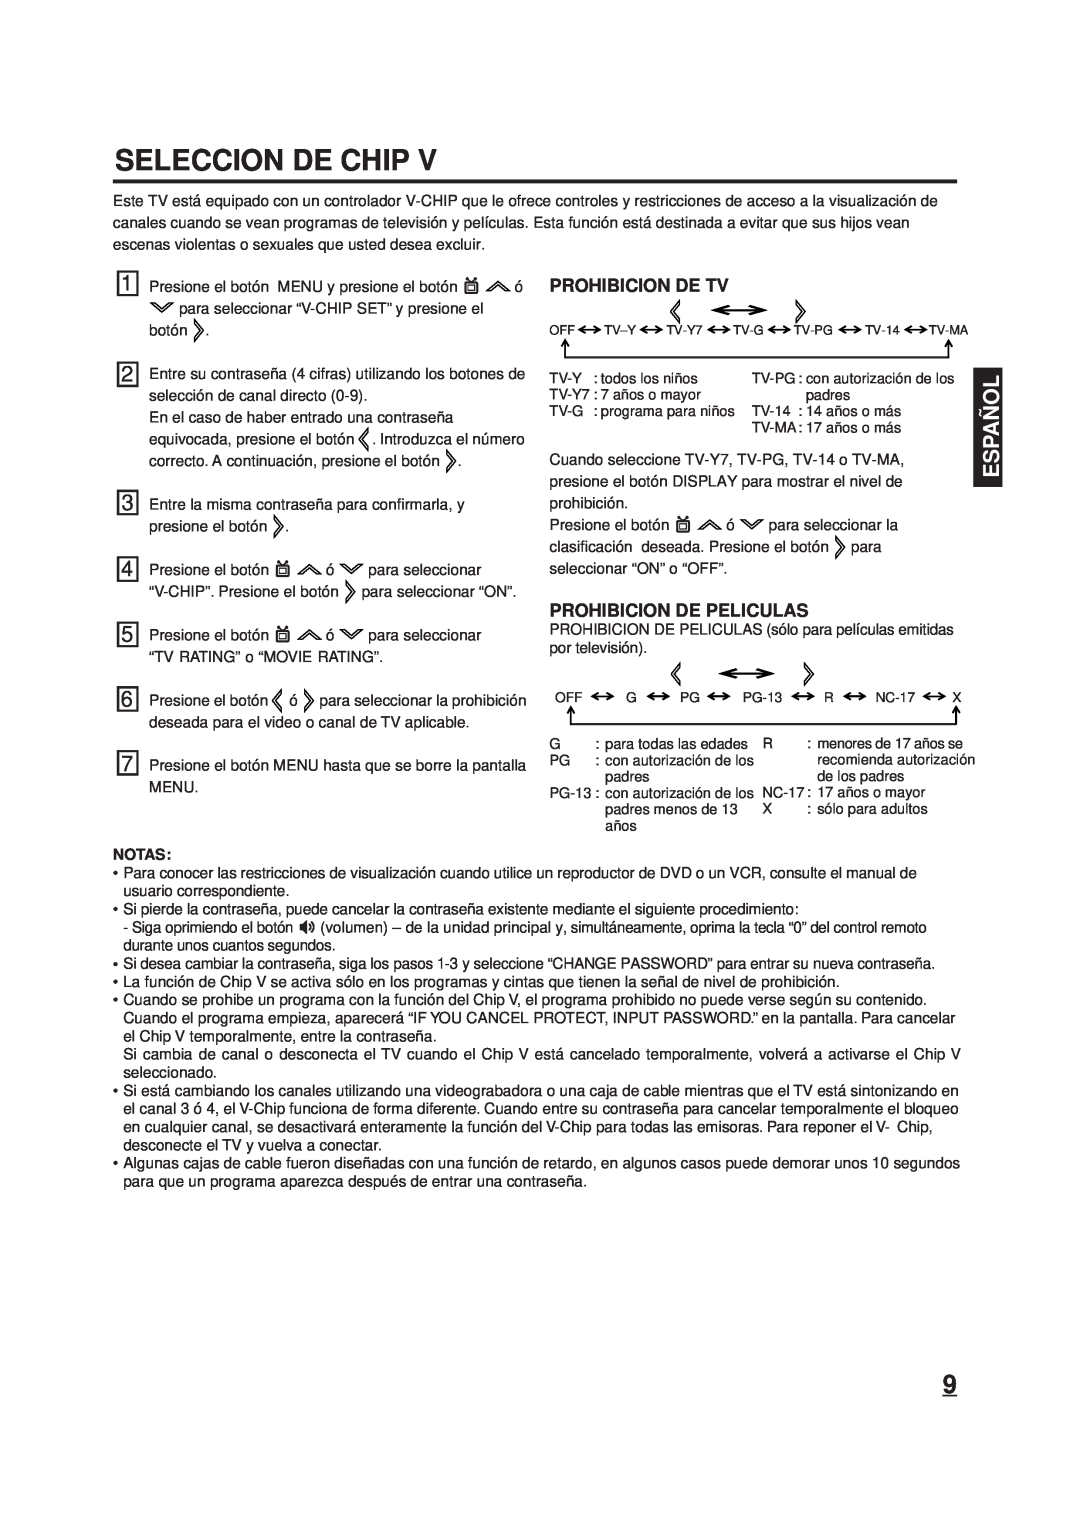 Memorex DT1900-C manual Seleccion De Chip, Prohibicion De Tv, Prohibicion De Peliculas, Españ Ol 